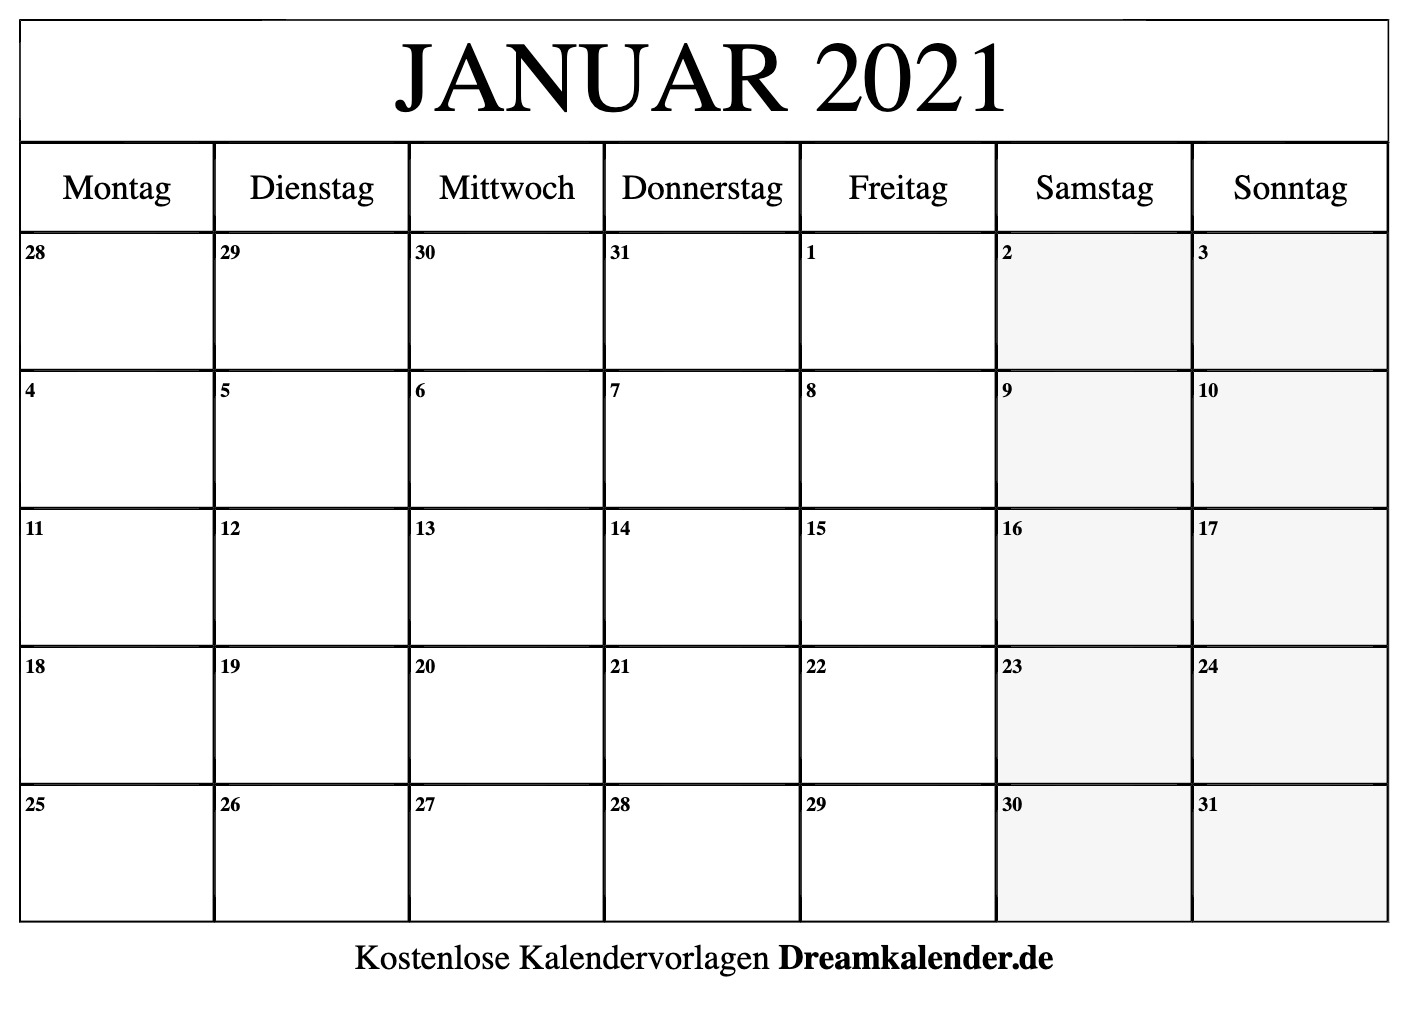 Get Terminkalender 2021 Zum Ausdrucken